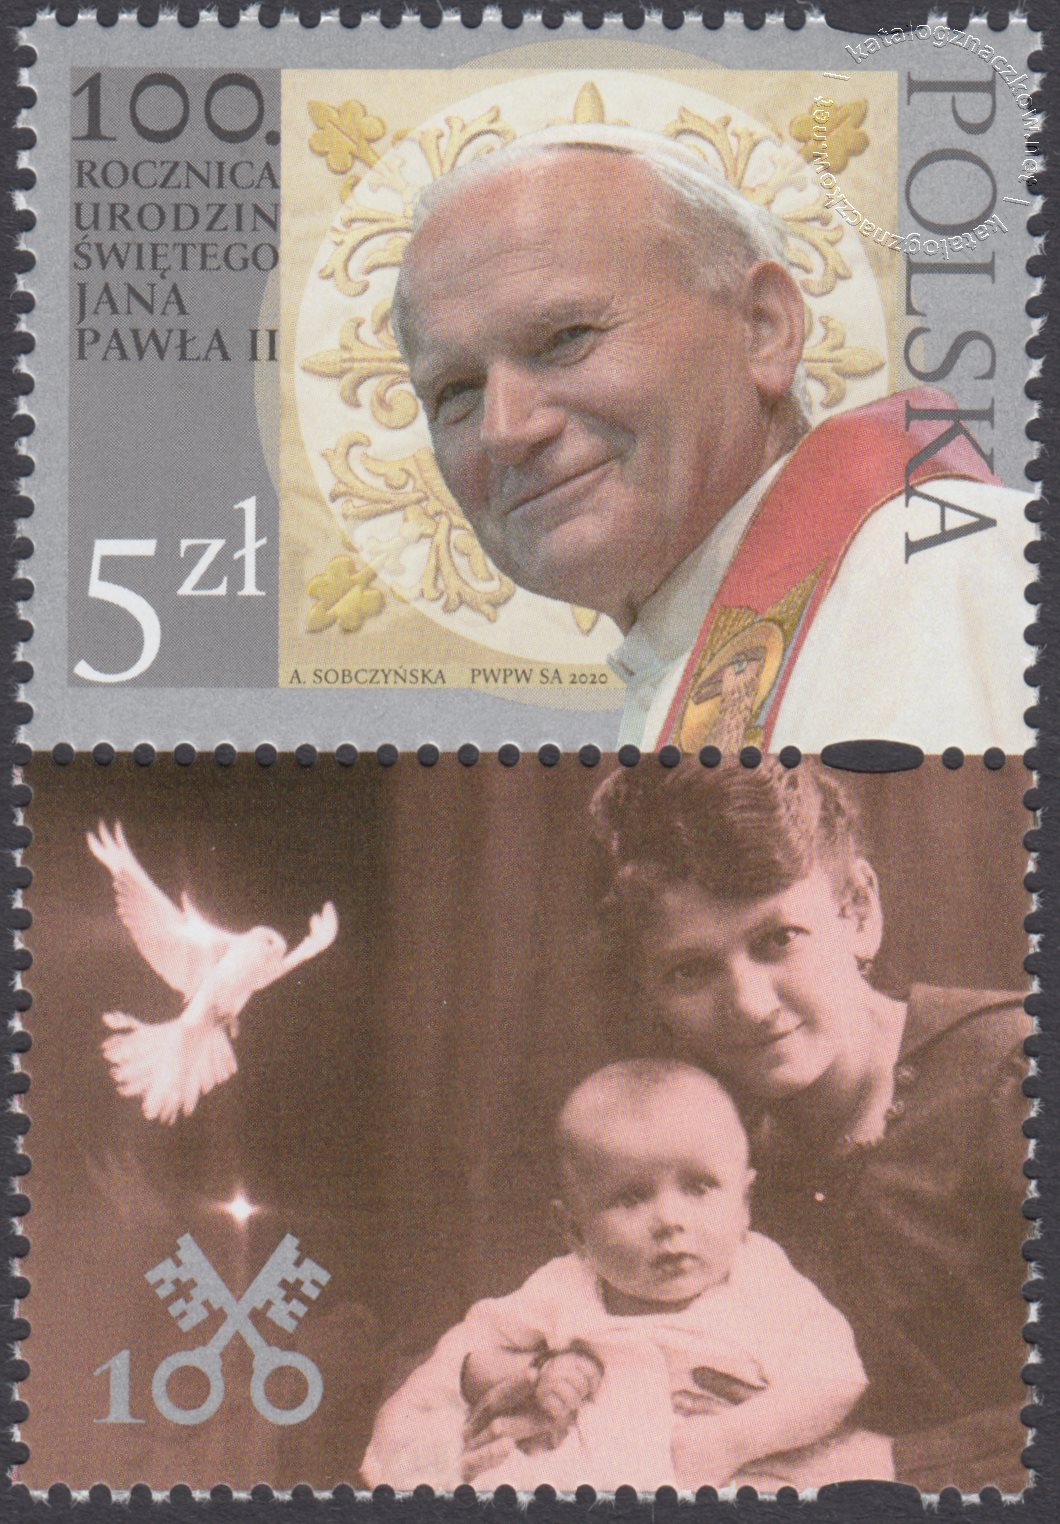 100 rocznica urodzin Świętego Jana Pawła II znaczek nr 5094